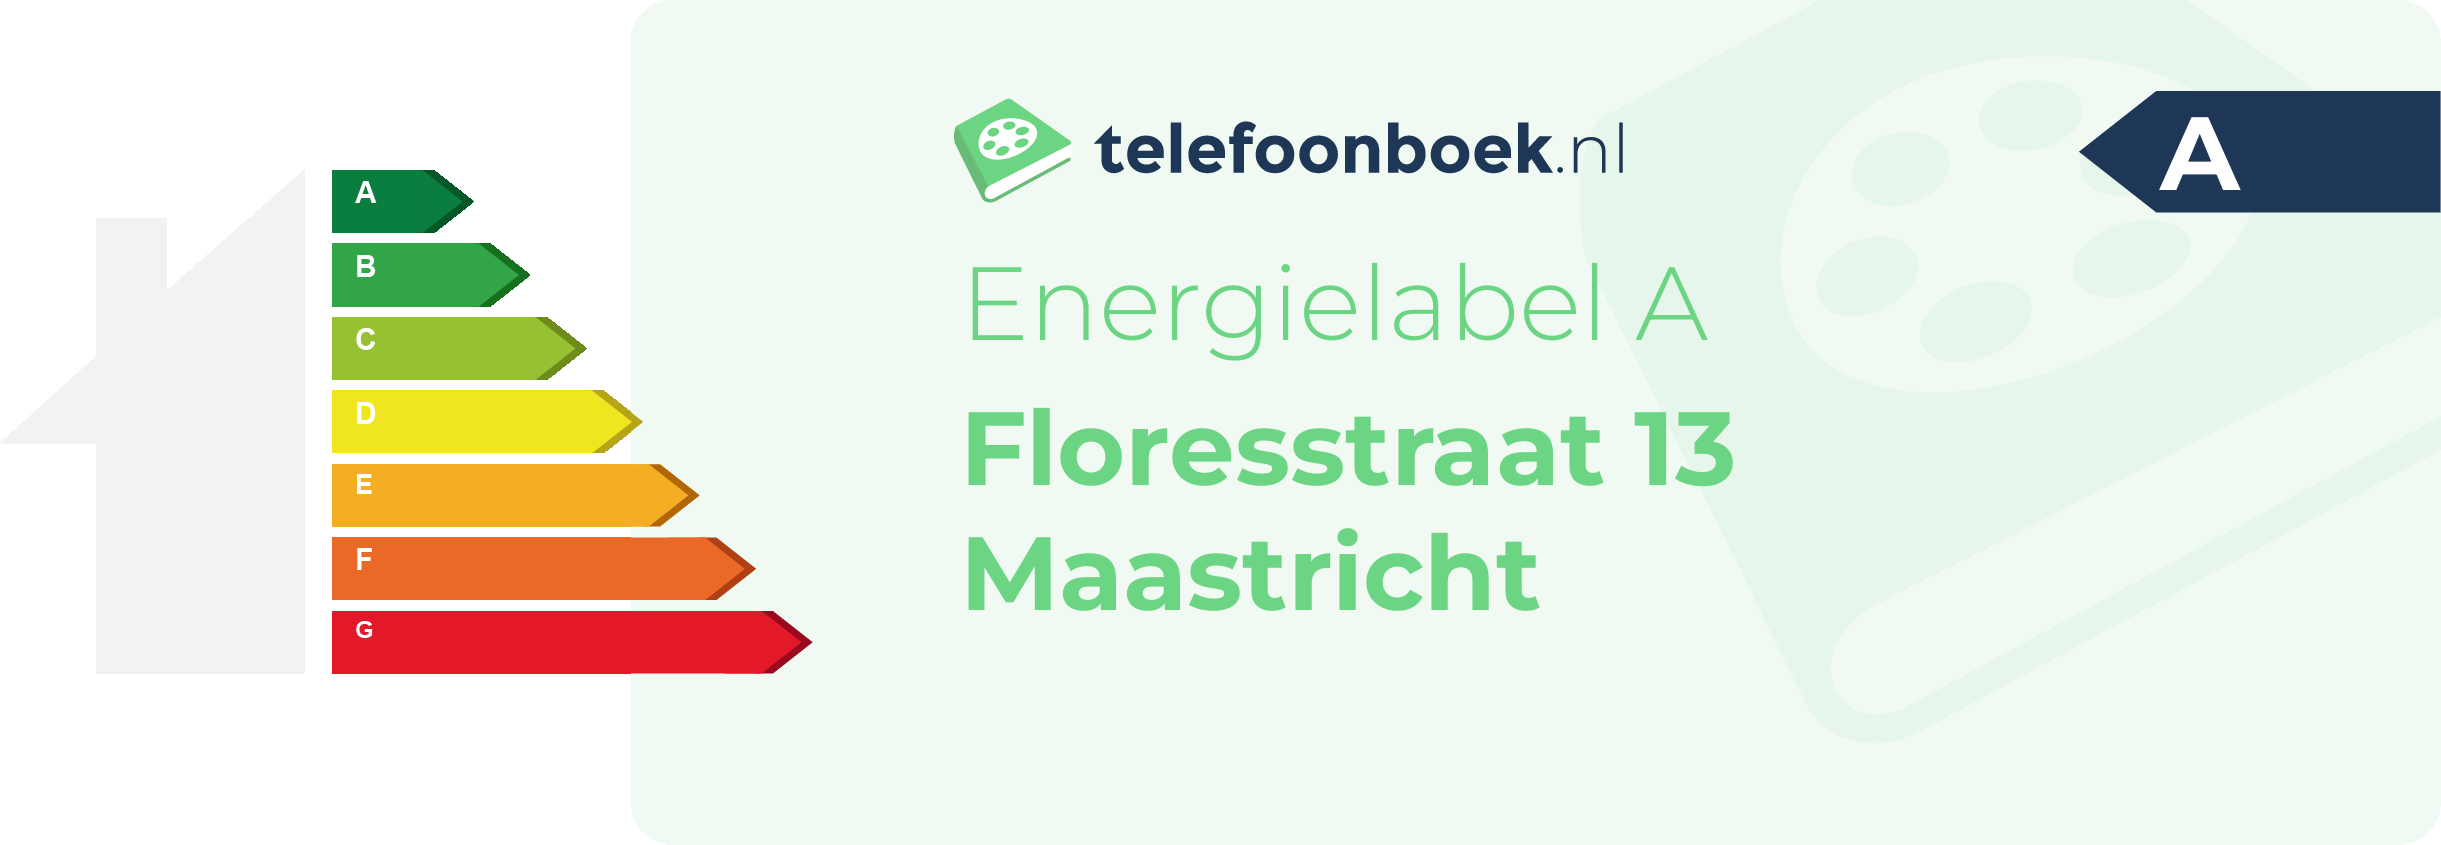 Energielabel Floresstraat 13 Maastricht